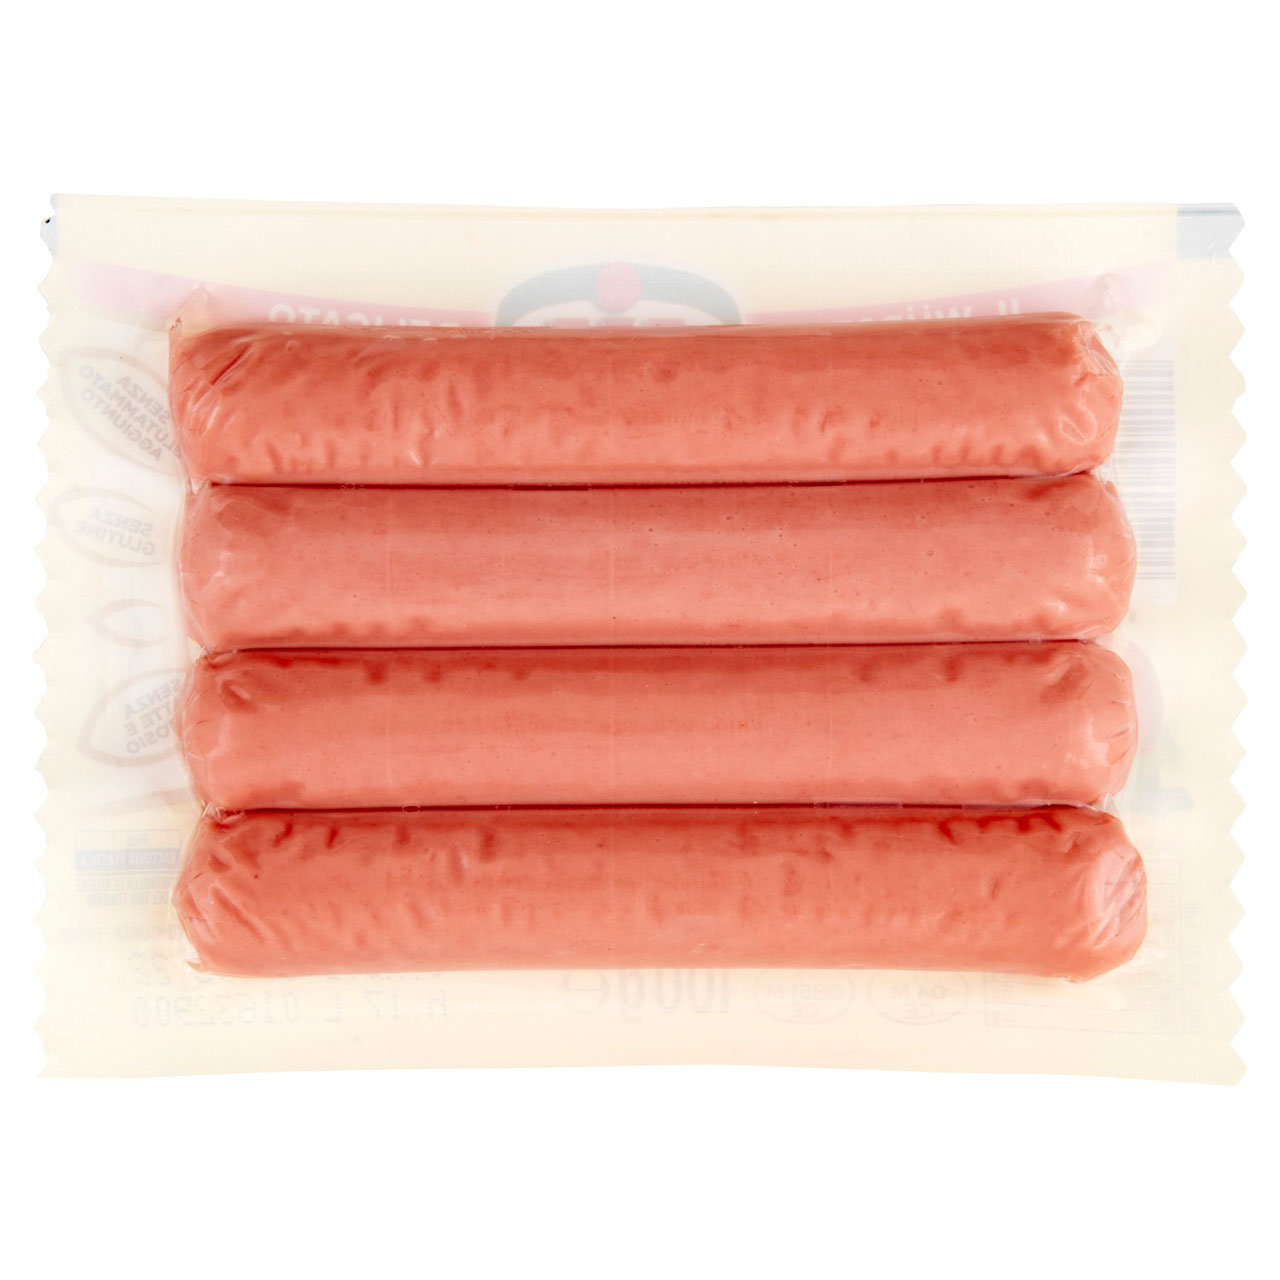 Aia Wudy Classico Snack 100 g in vendita online